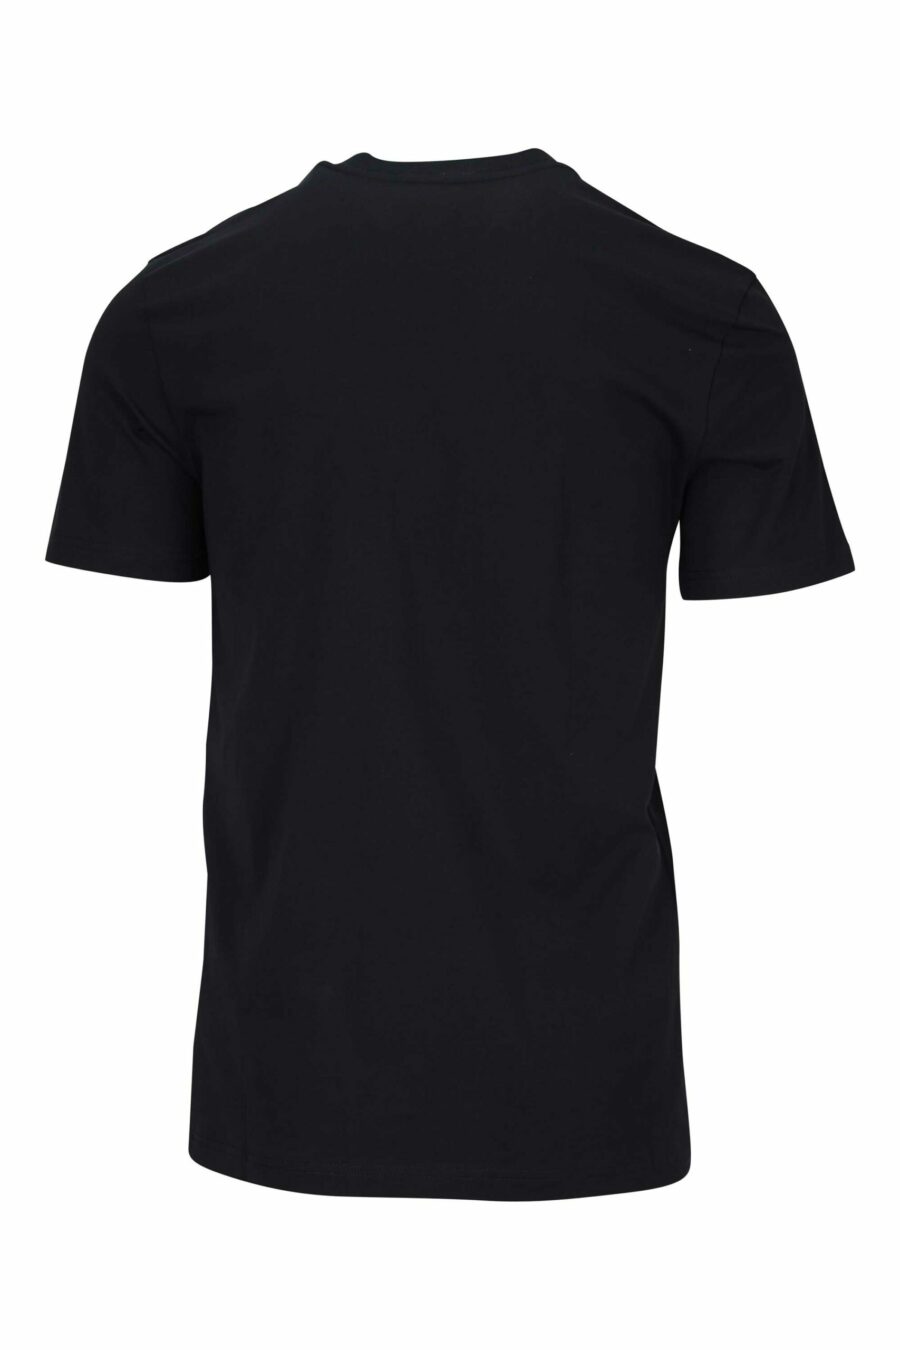 T-shirt preta com minilogo "teddy" bordado - 667113455549 1 scaled